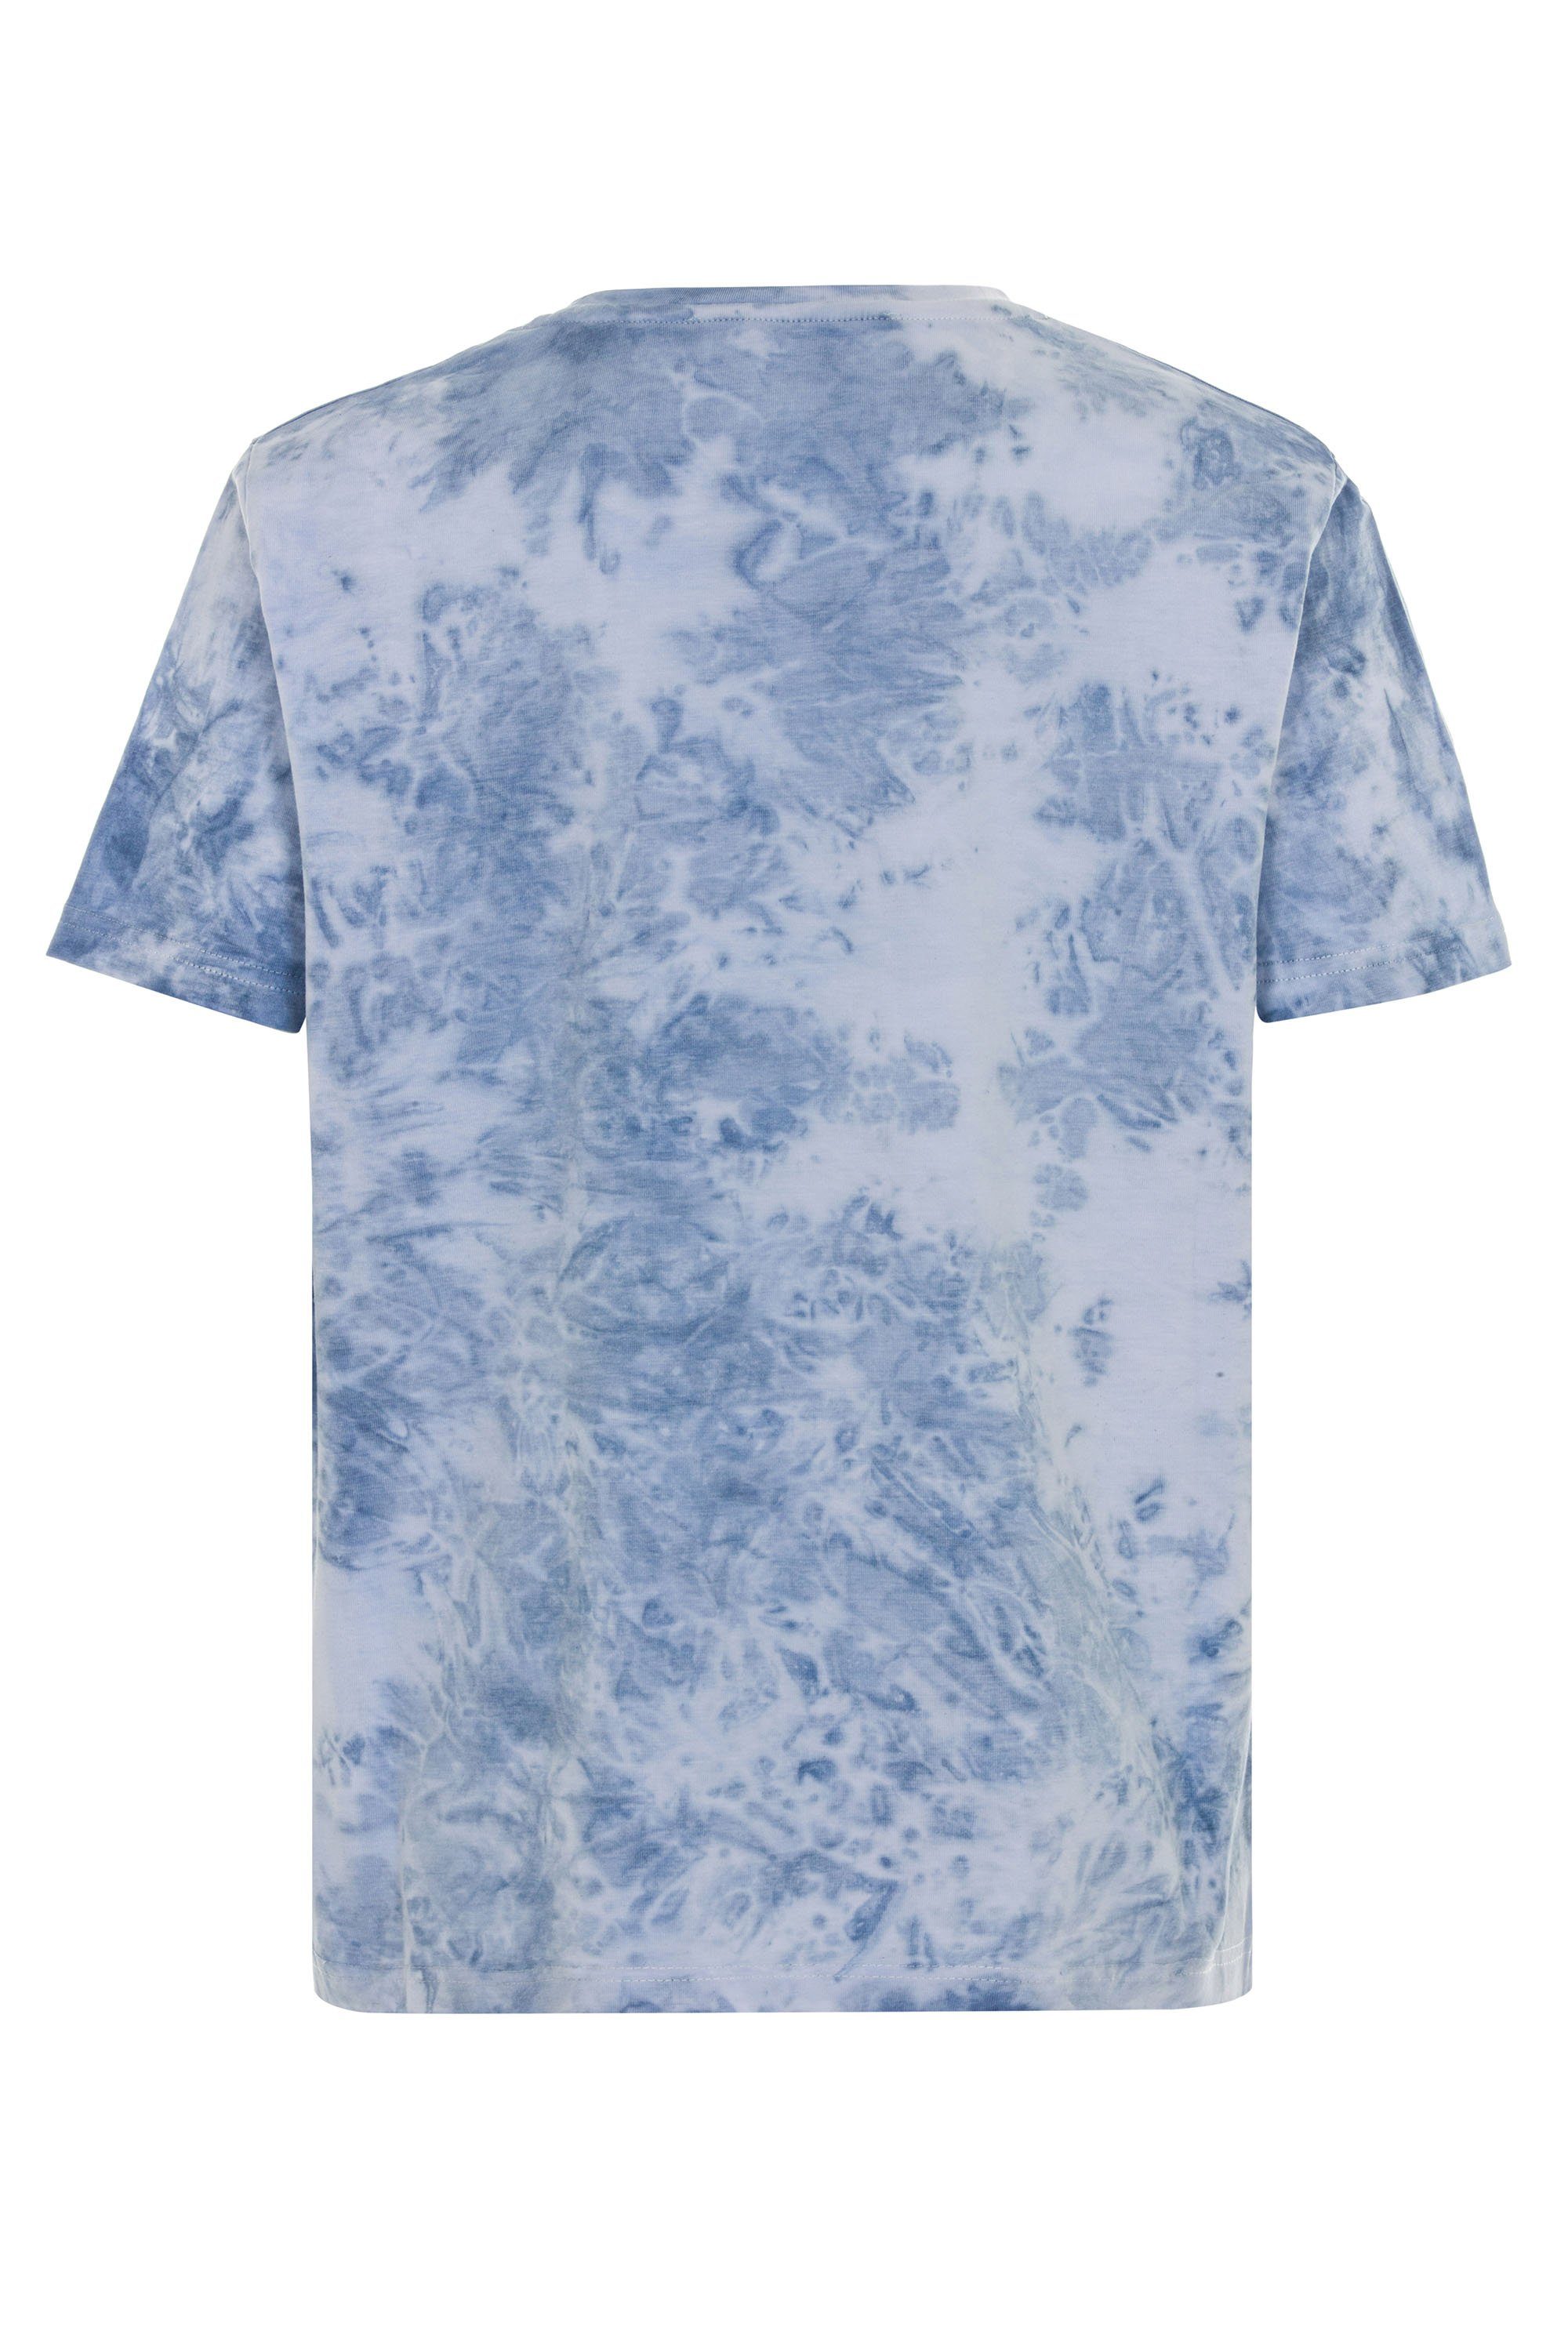 Cipo & Baxx T-Shirt mit coolem Motorrad-Print blau